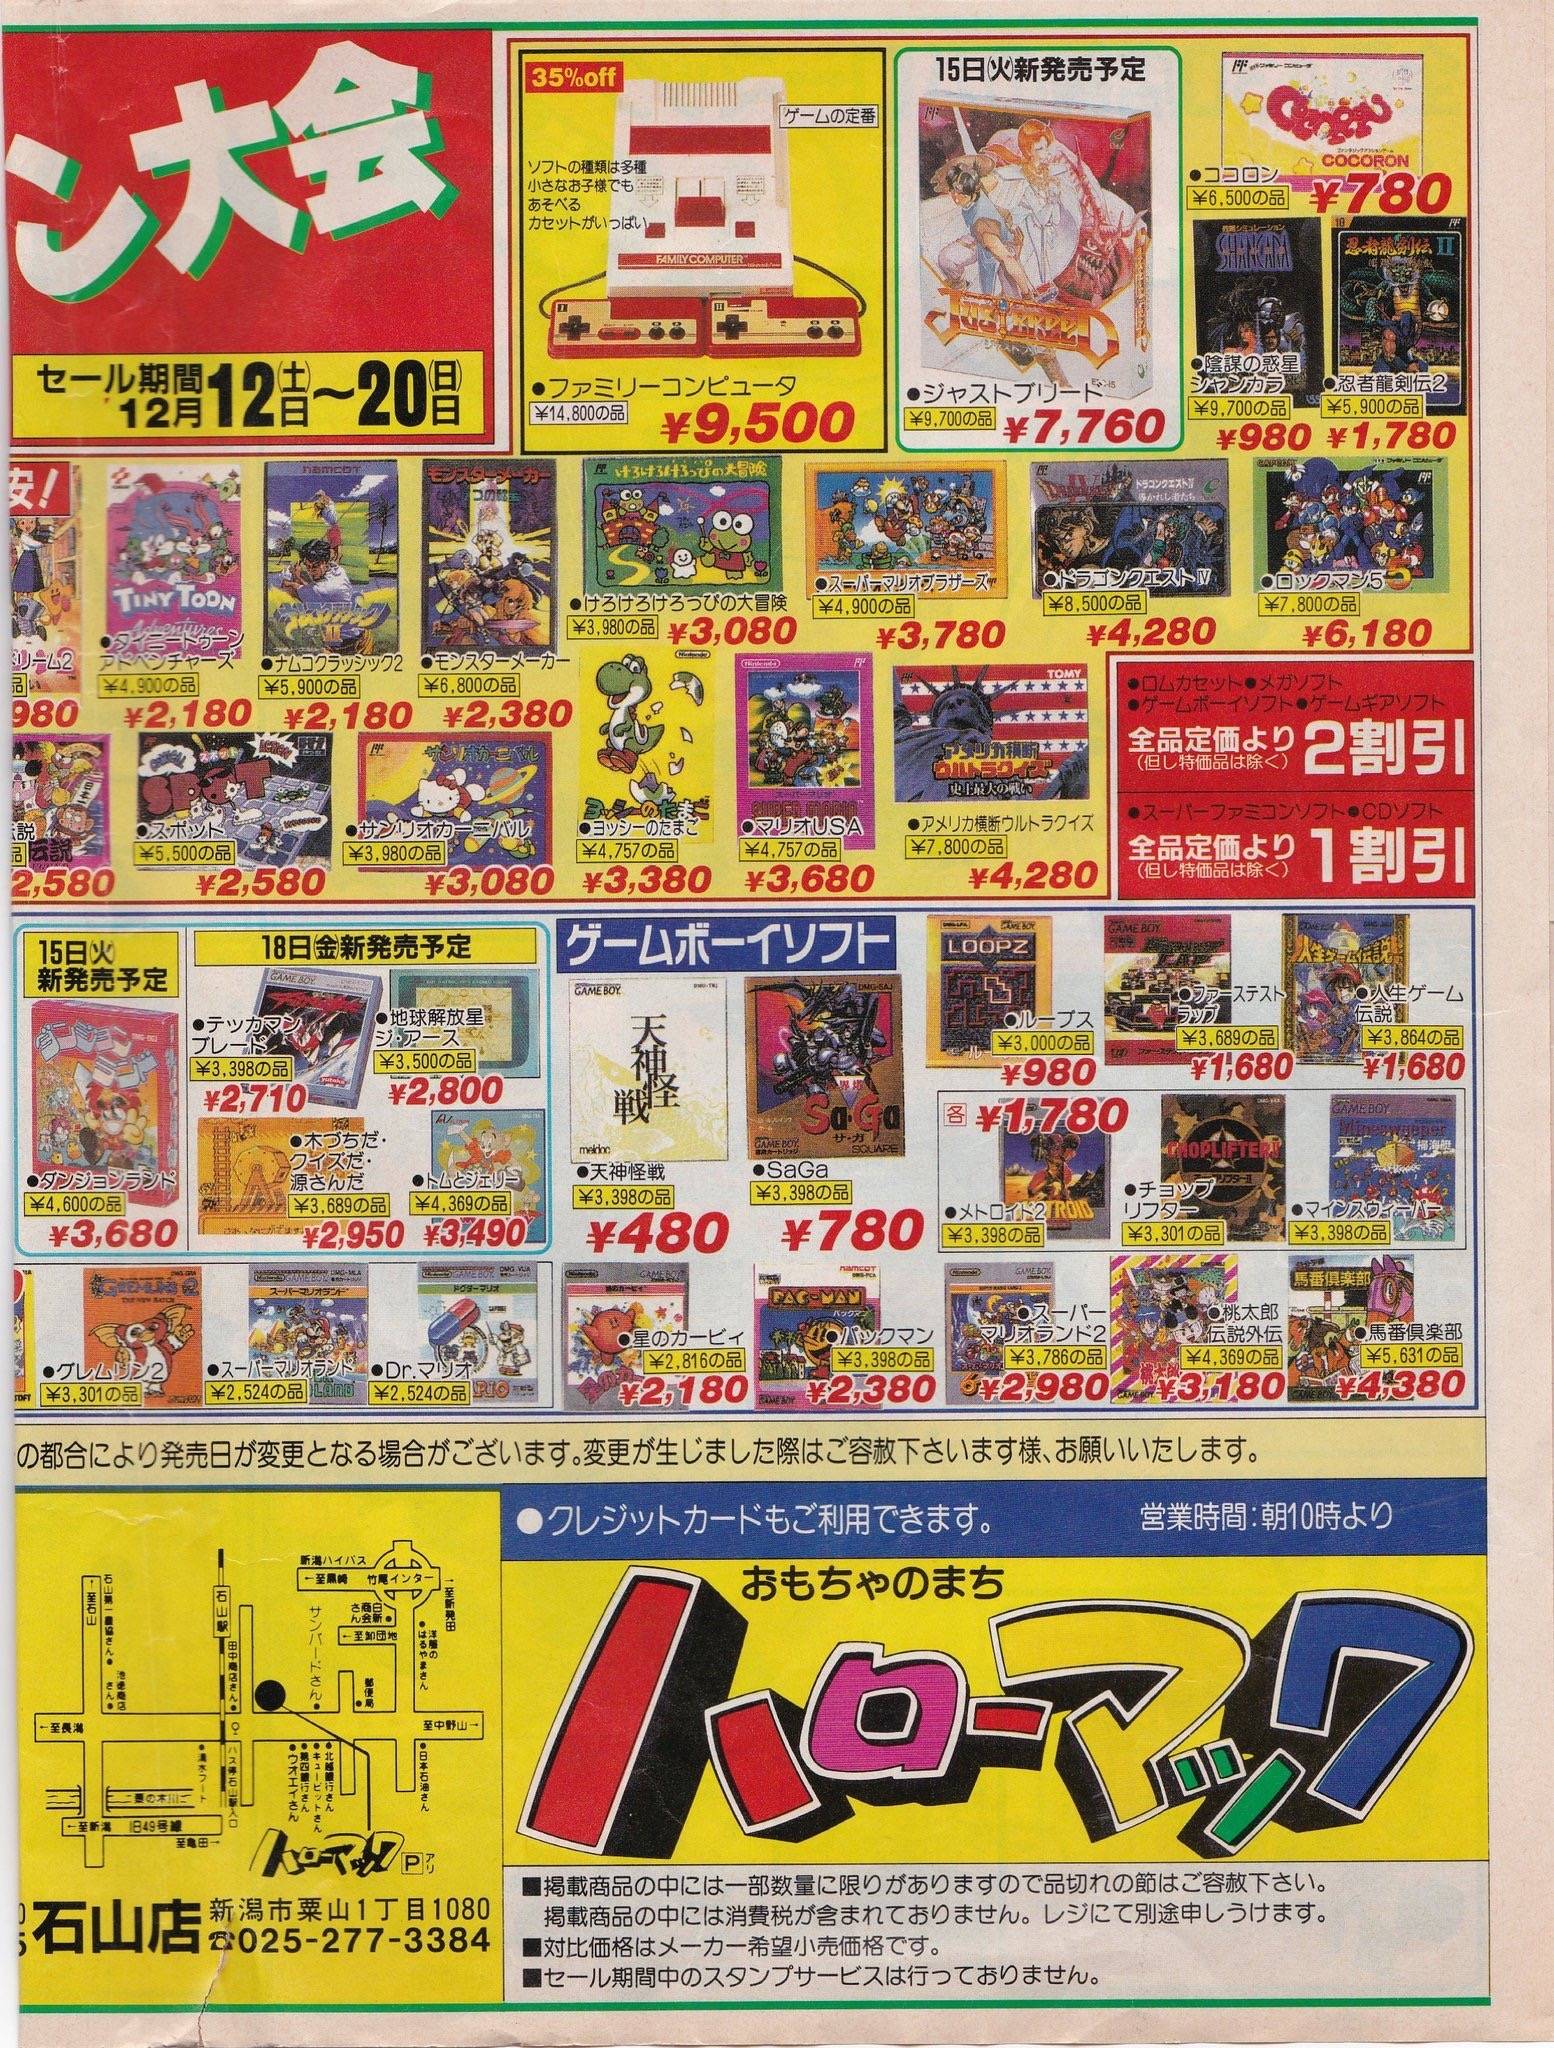 【画像】かつて日本に存在したおもちゃ屋「トイザらス」懐かしすぎるwwwwwwwwwwwwwwwwww\n_1